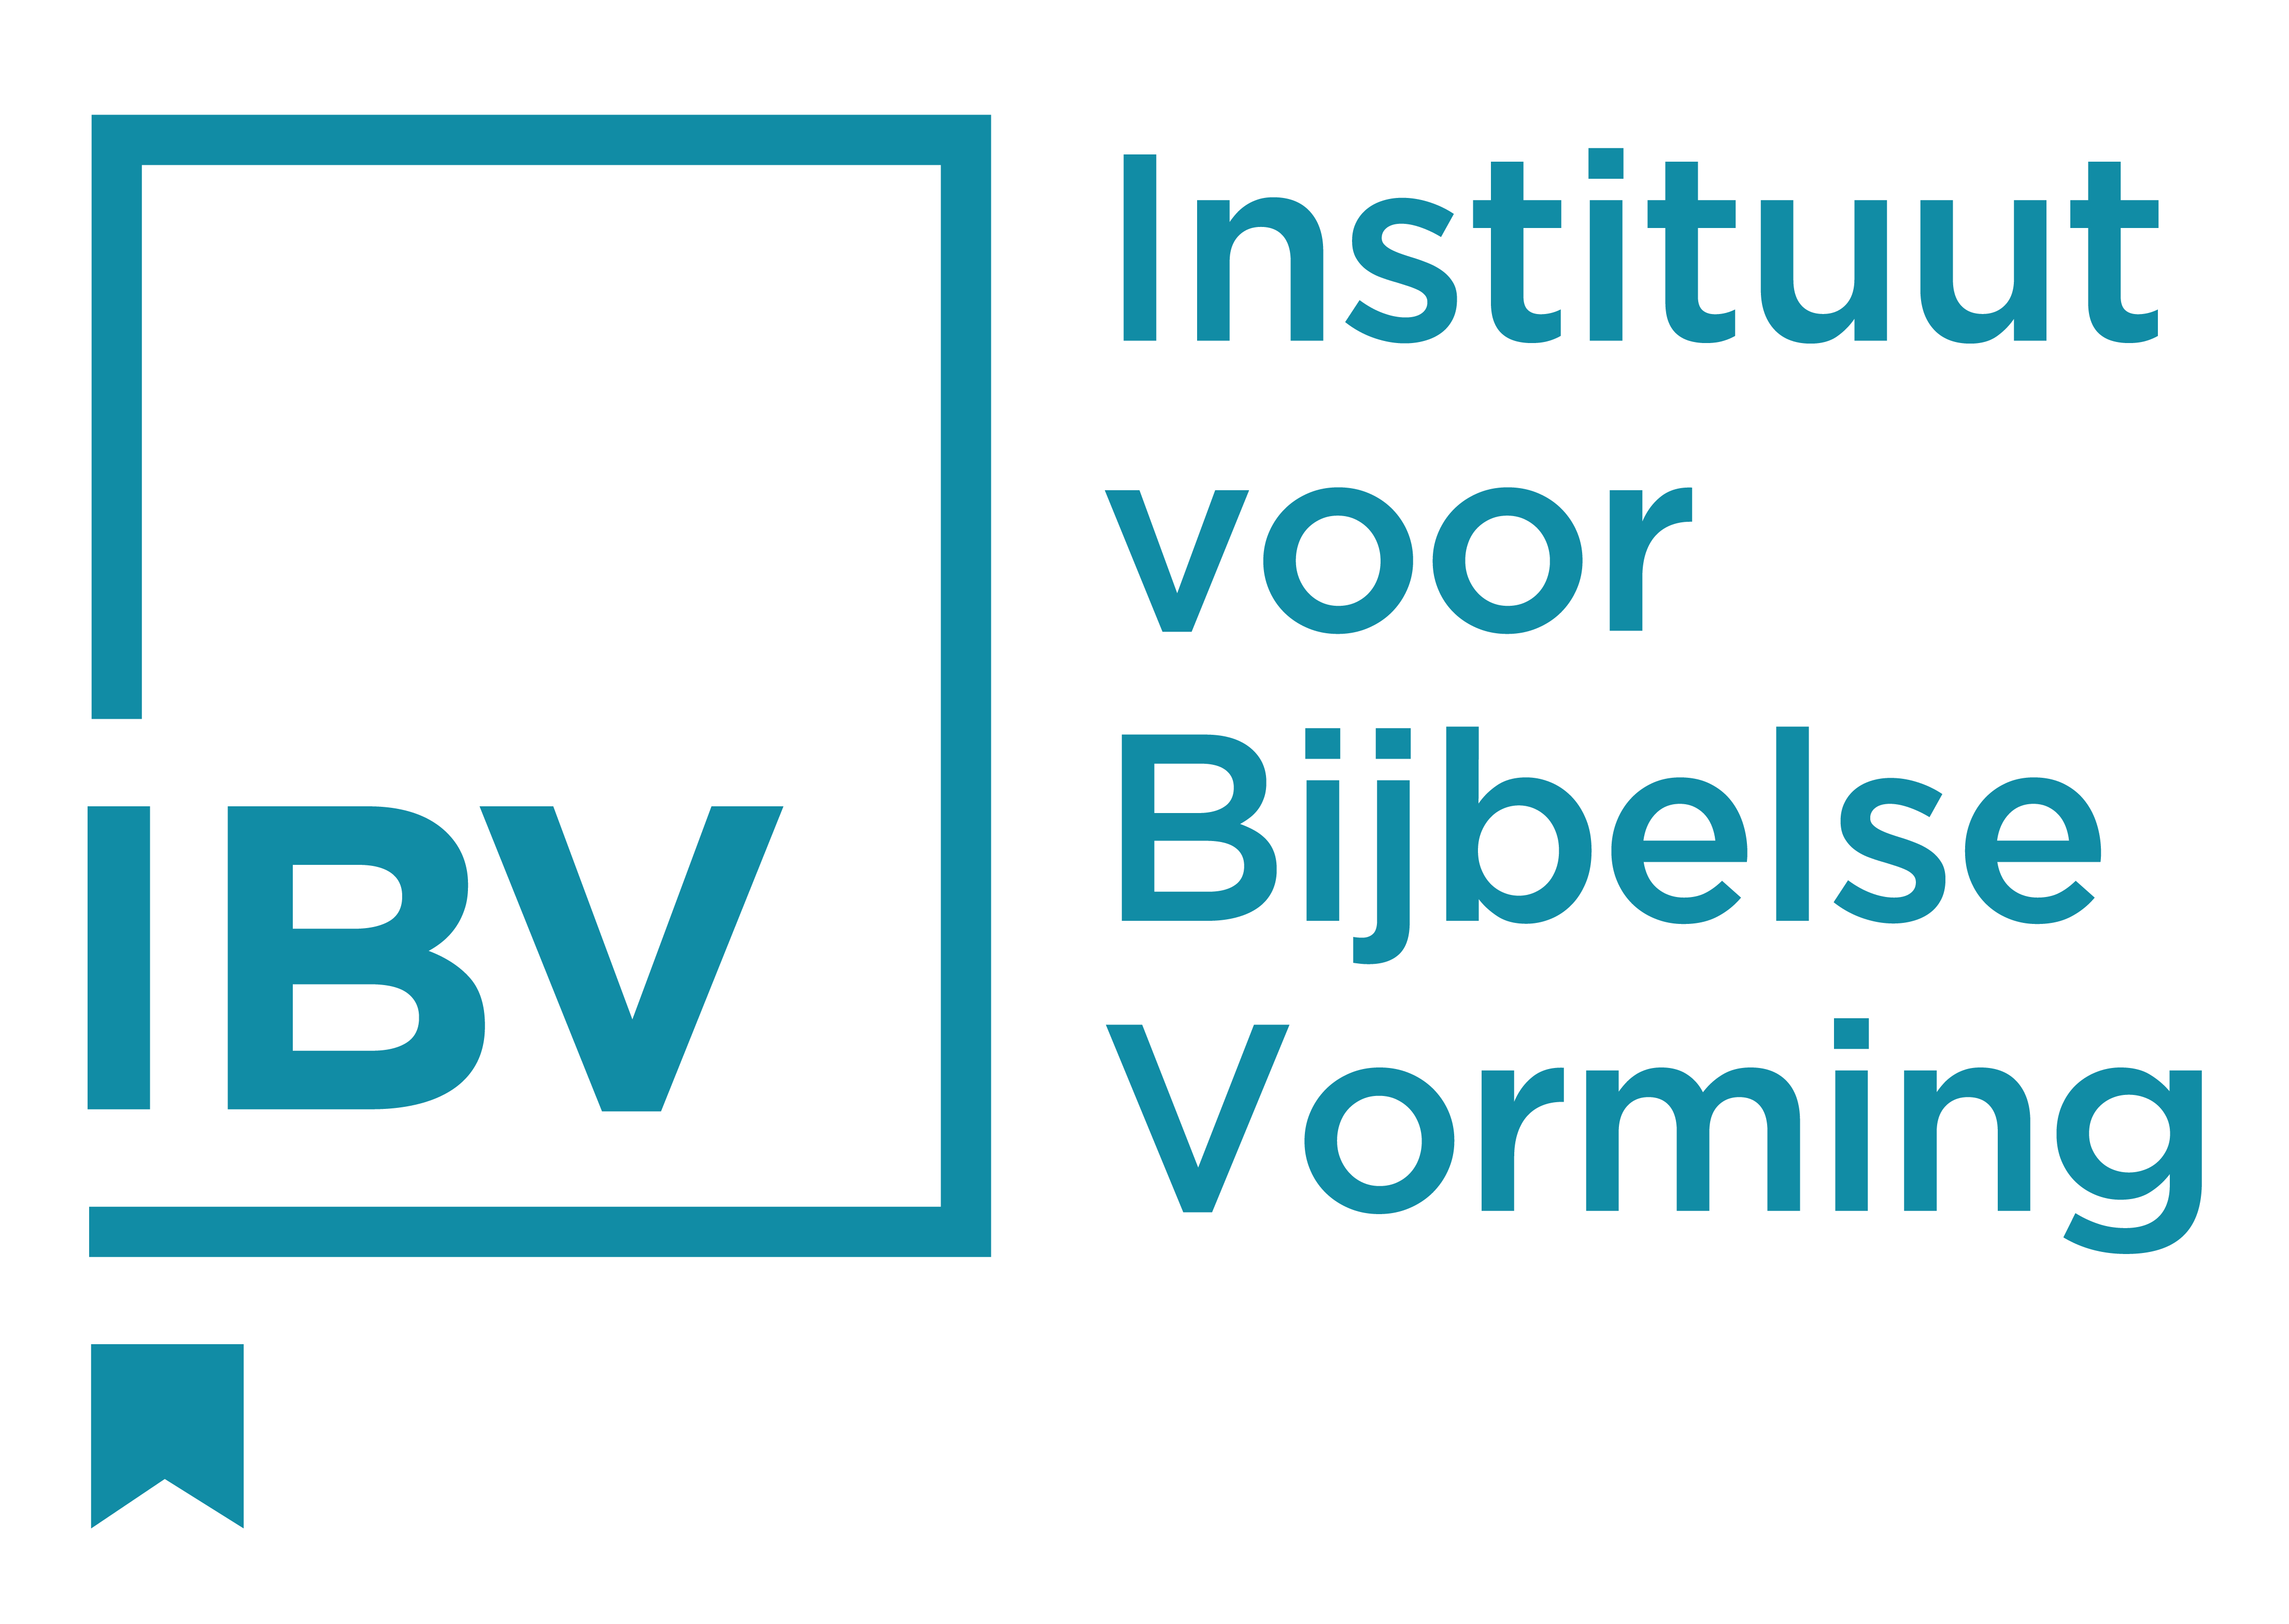 Instituut voor Bijbelse Vorming vzw